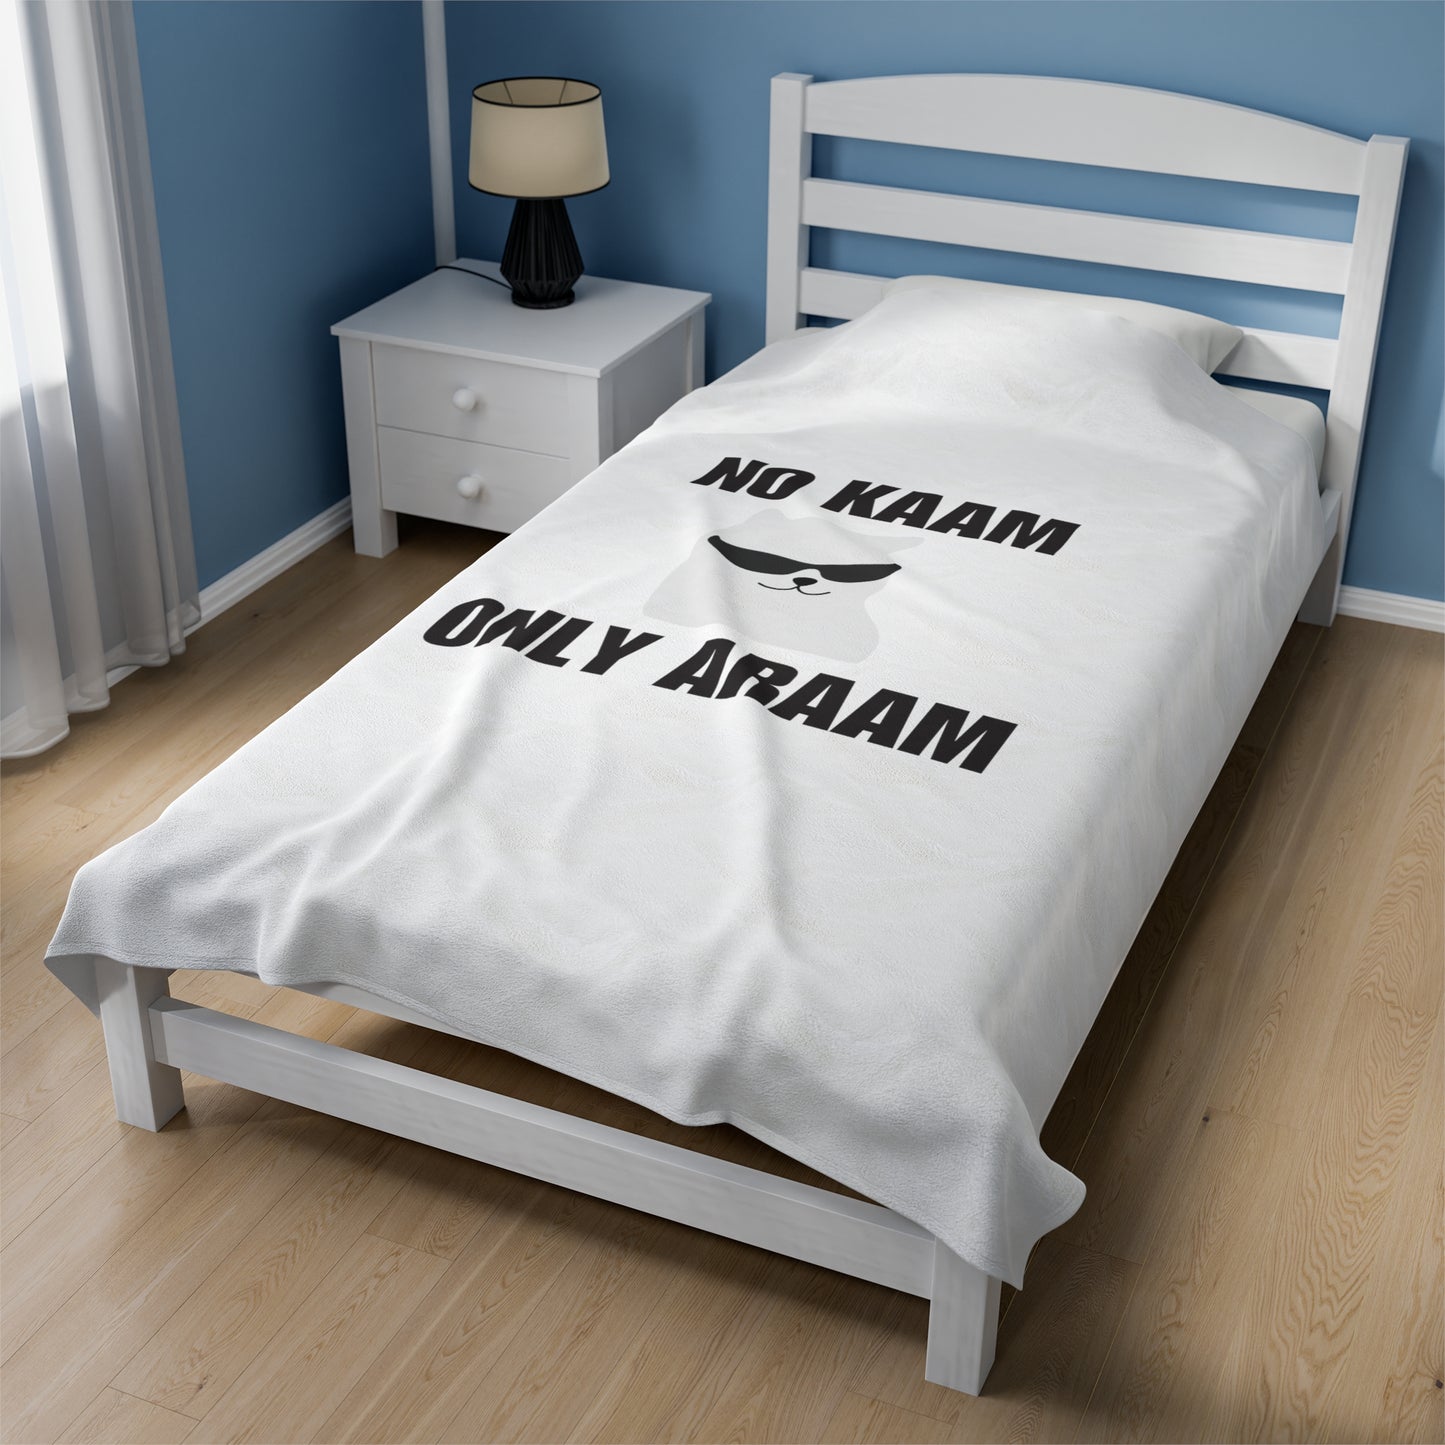 No Kaam Only Araam Velveteen Plush Blanket